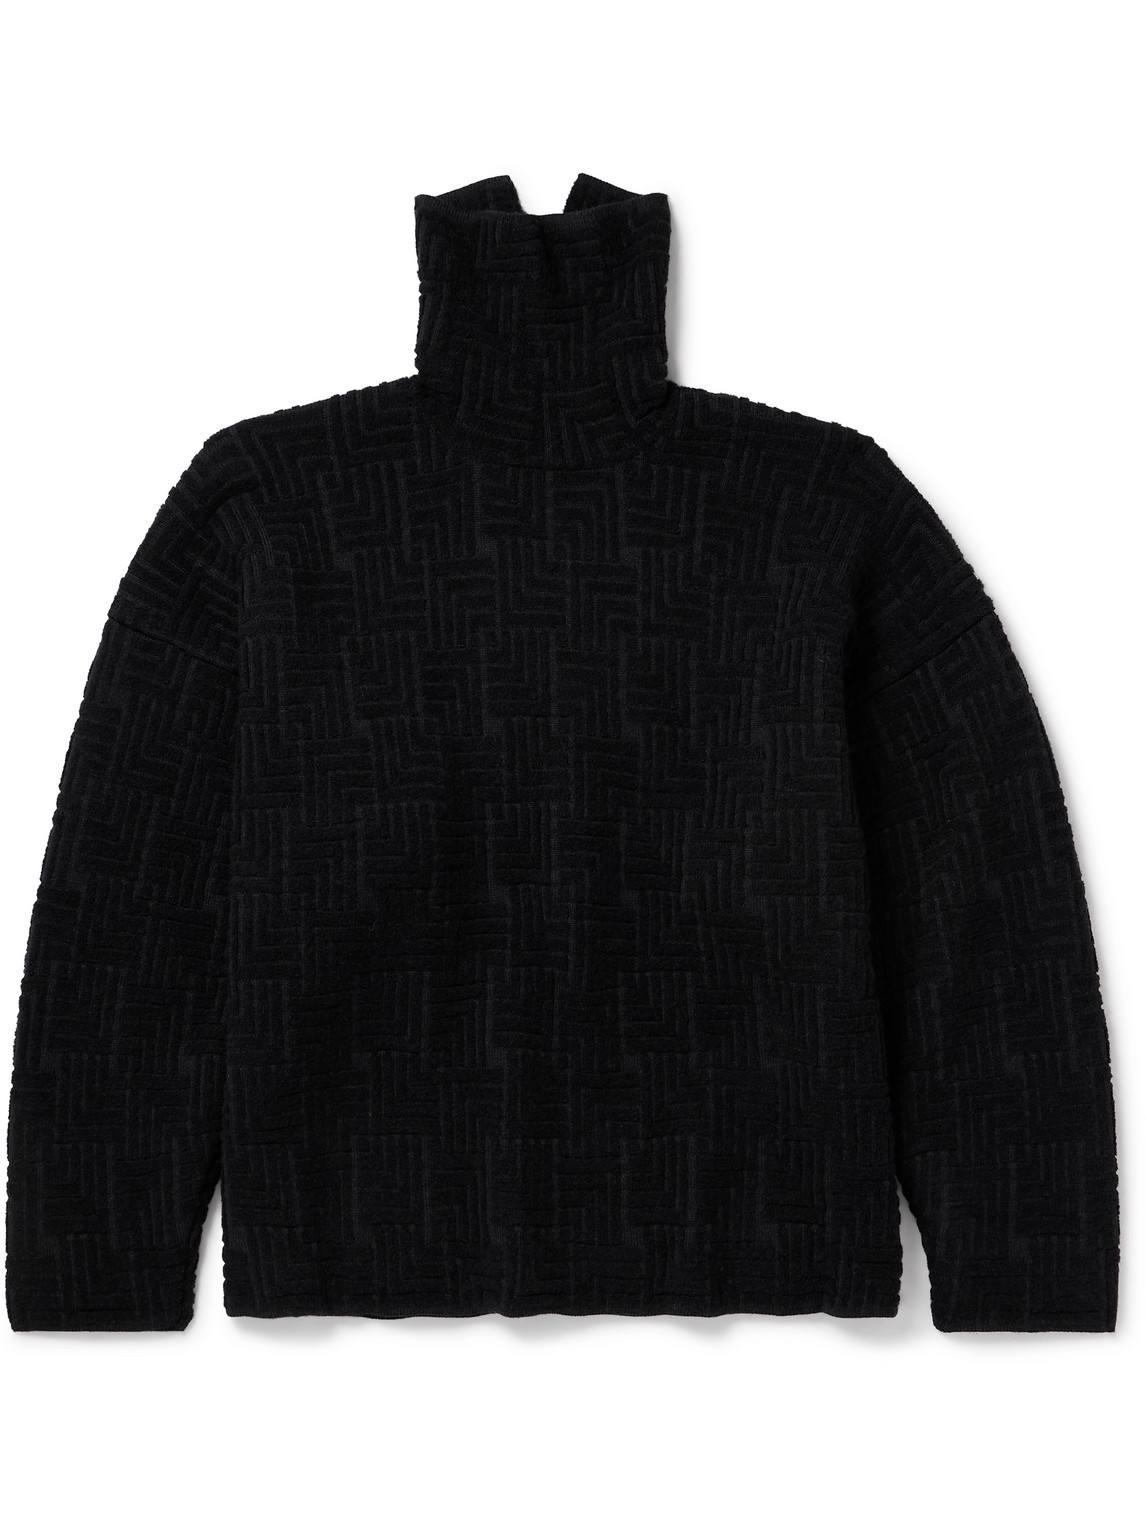 Fear Of God Oversized Jacquard-knit Virgin Wool-blend Rollneck Sweater In Black